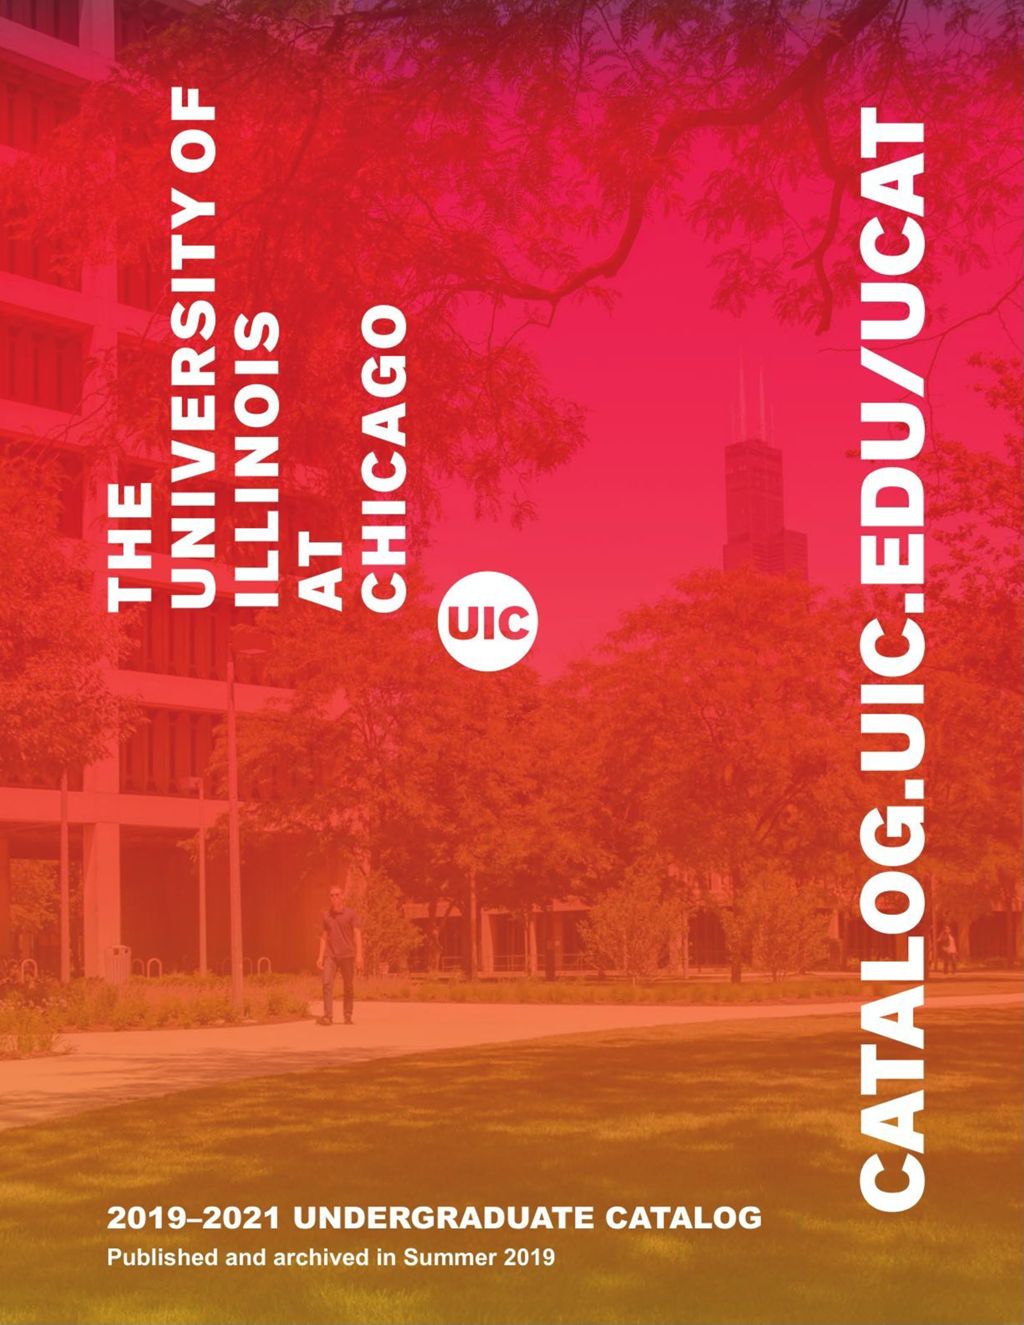 Miniature of Undergraduate Catalog, 2019-2021